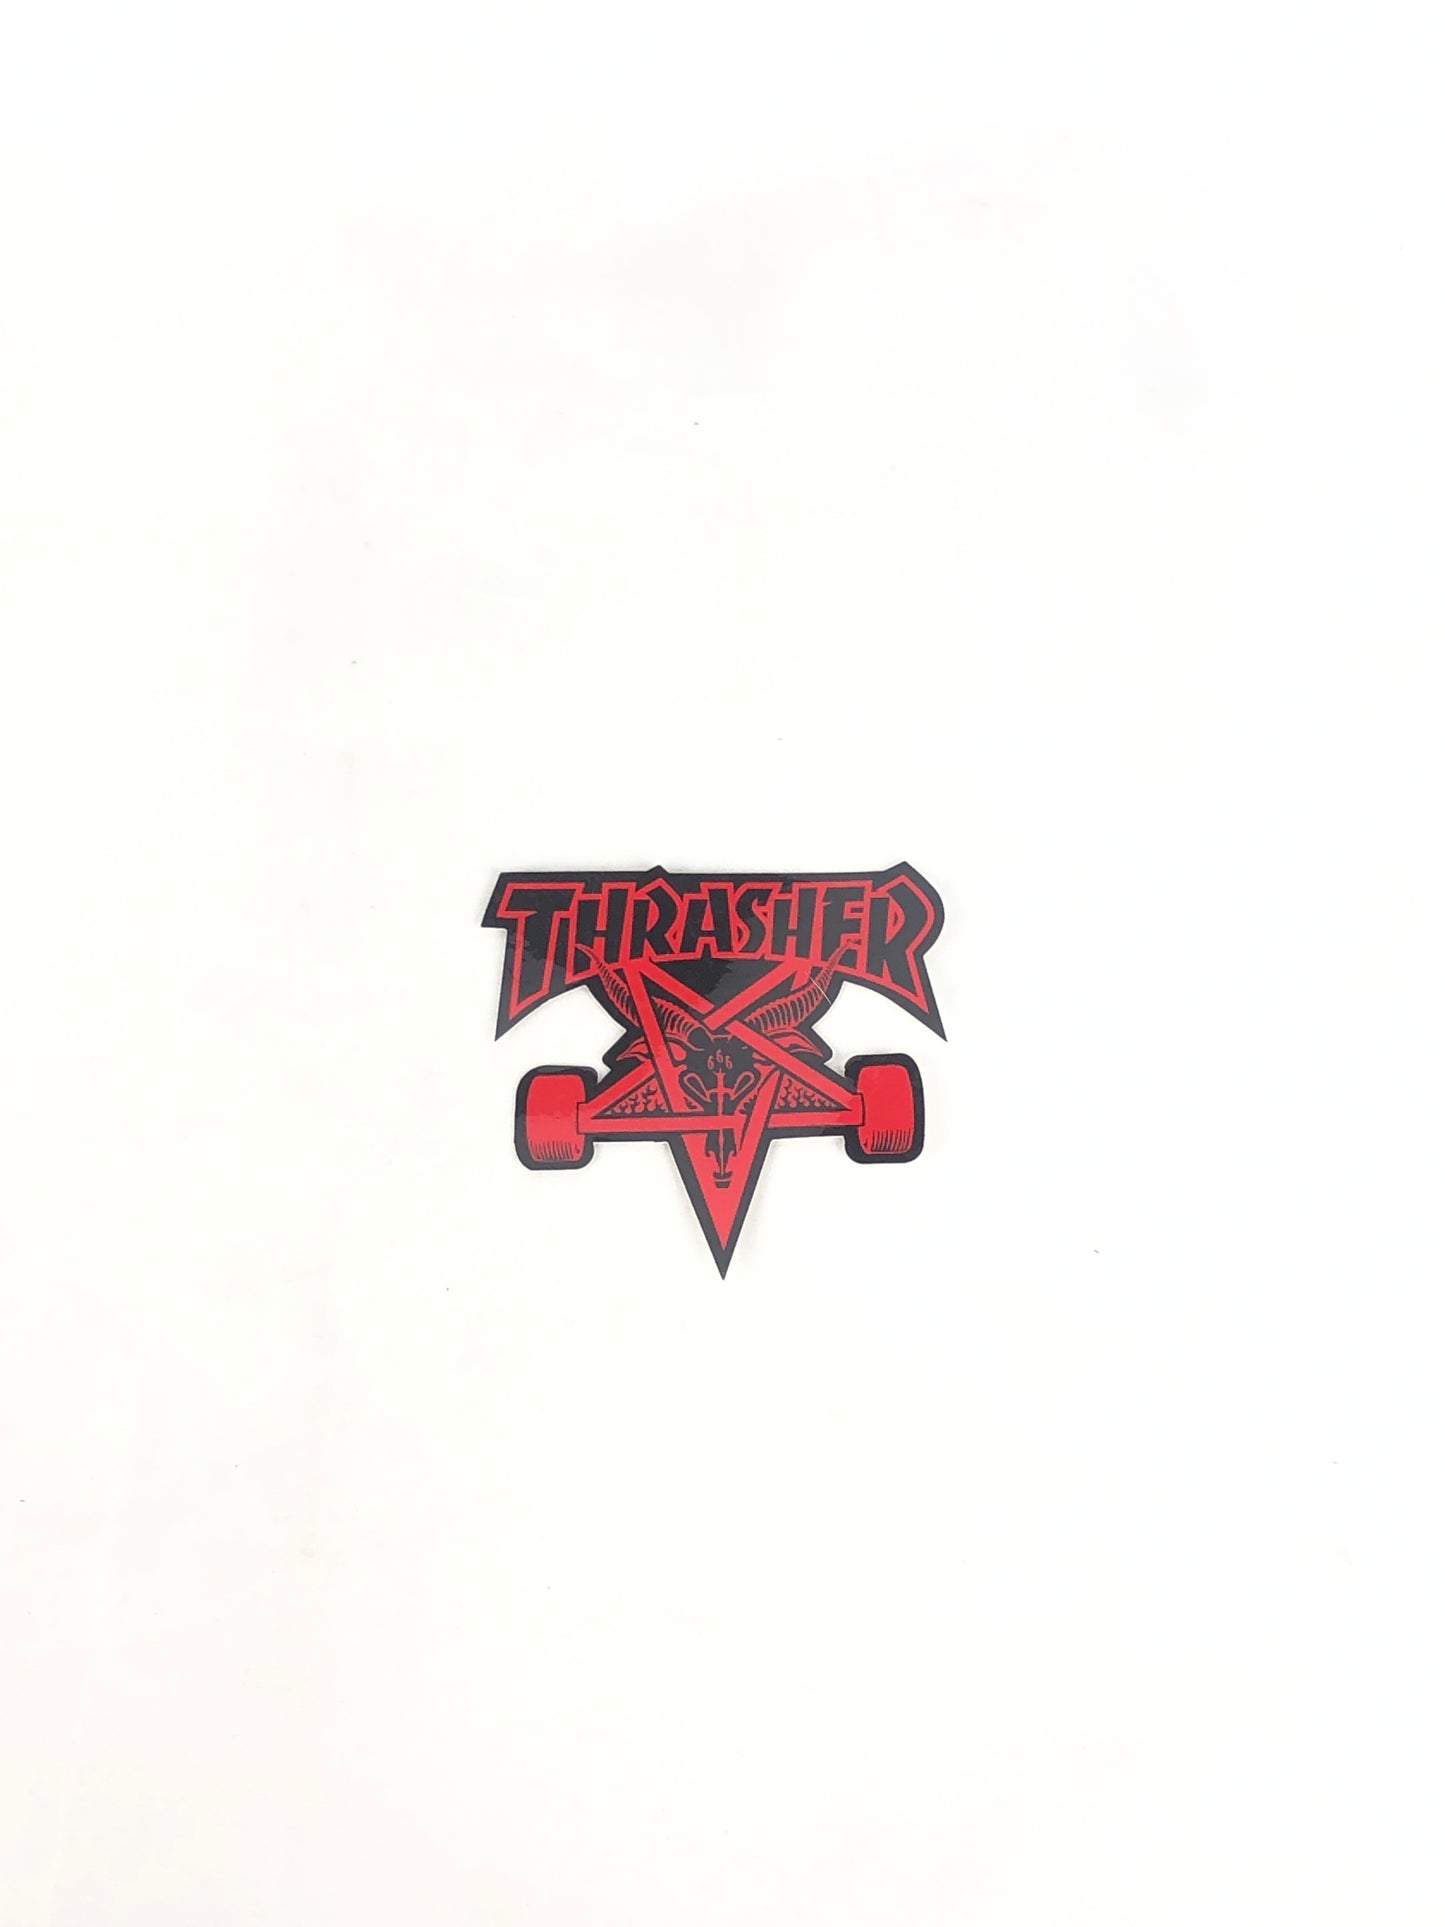 Thrasher Magazine Skate Goat Black Red 4" x 3.4" Sticker